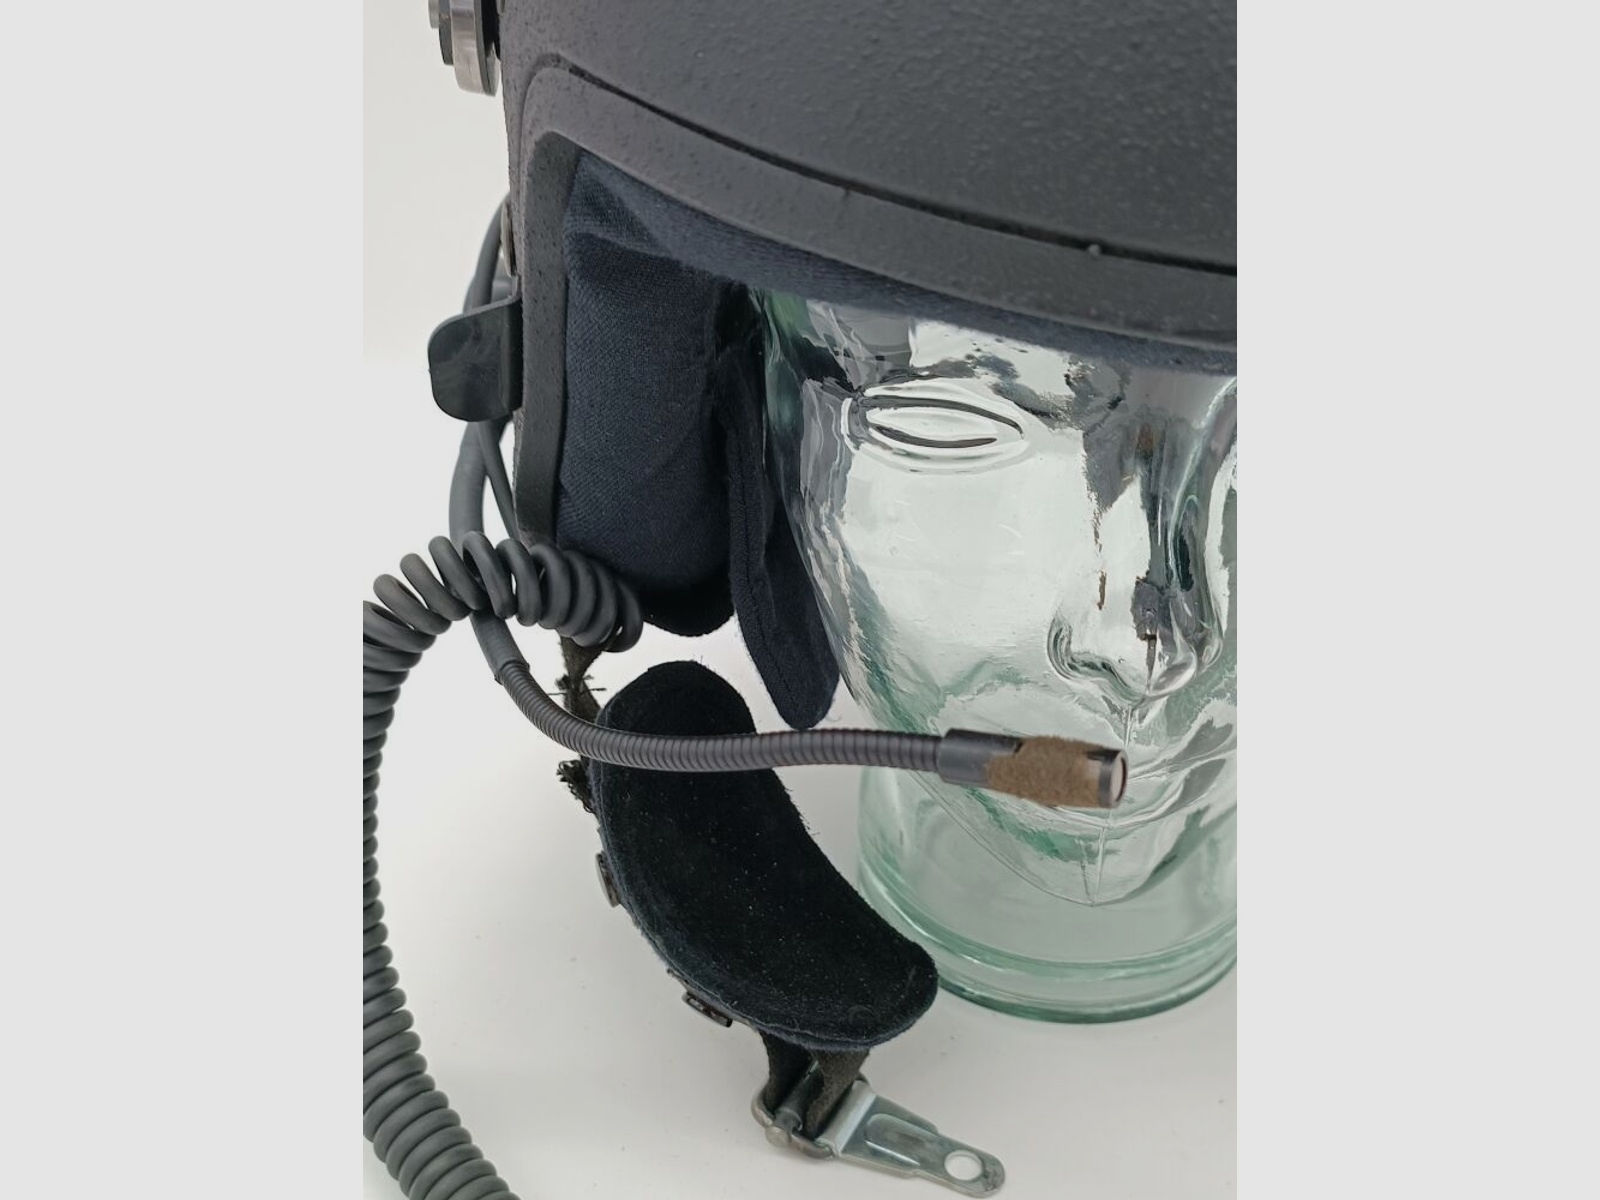 Schuberth	 P100 Polizeihelm aus Kevlar mit ballistischem Visier